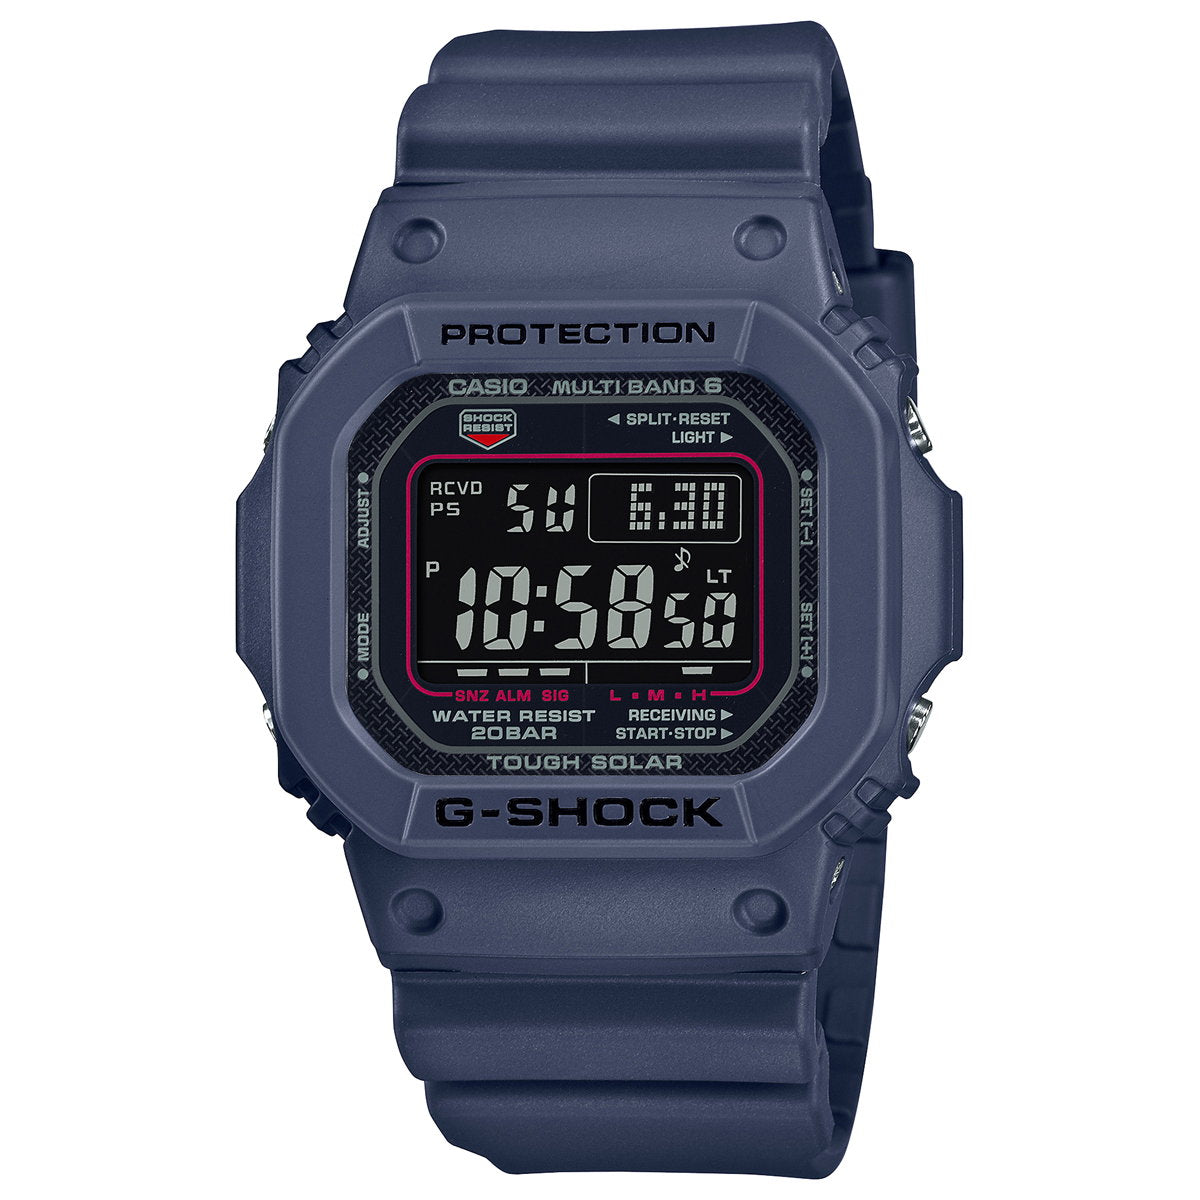 G-SHOCK Gショック GW-M5610U-2JF 電波 ソーラー 電波時計 5600 デジタル メンズ 腕時計 カシオ CASIO タフソーラー